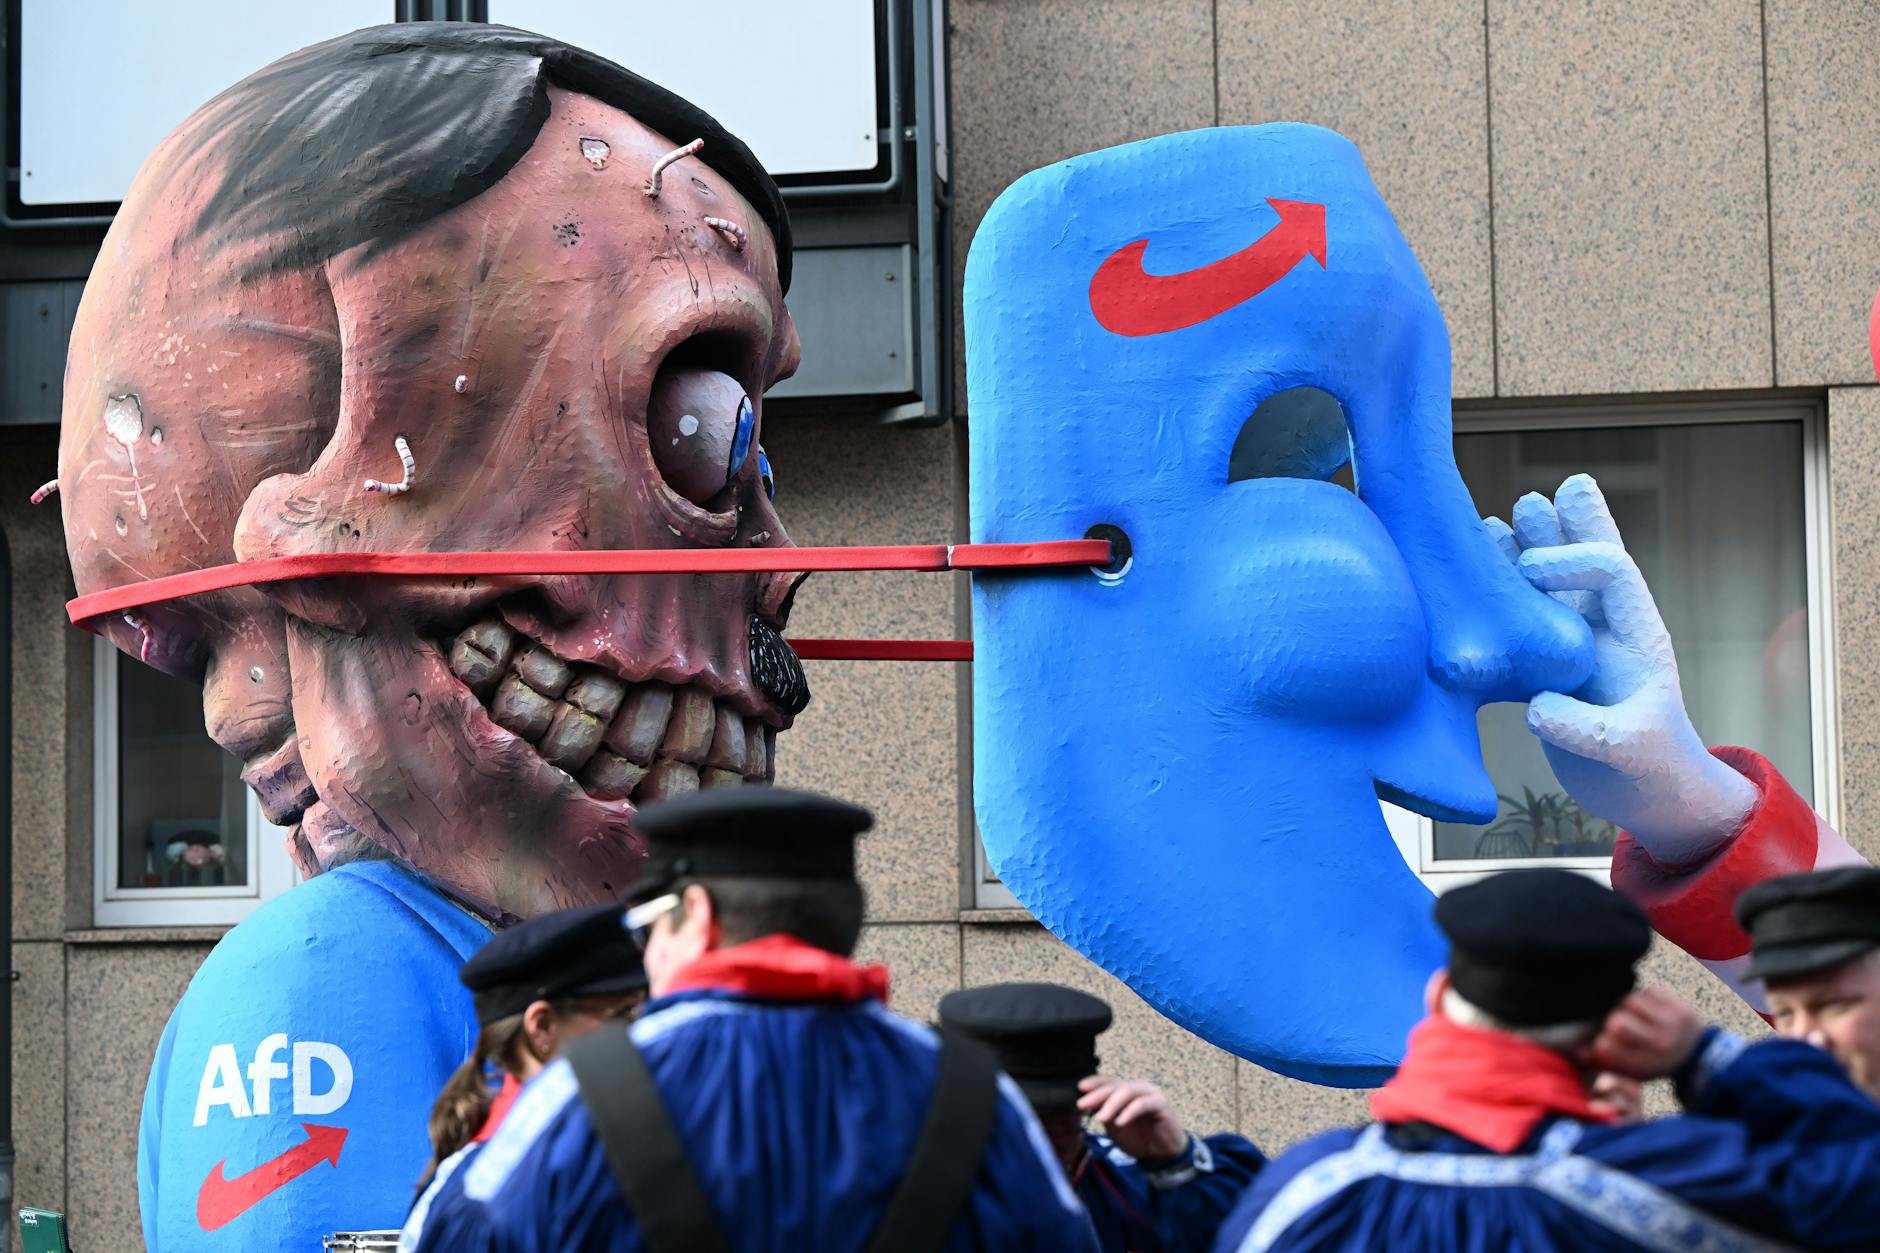 Auf einem Mottowagen beim Rosenmontagsumzug in Düsseldorf wird enthüllt, was hinter der AfD-Maske steckt: der Totenschädel von Adolf Hitler.